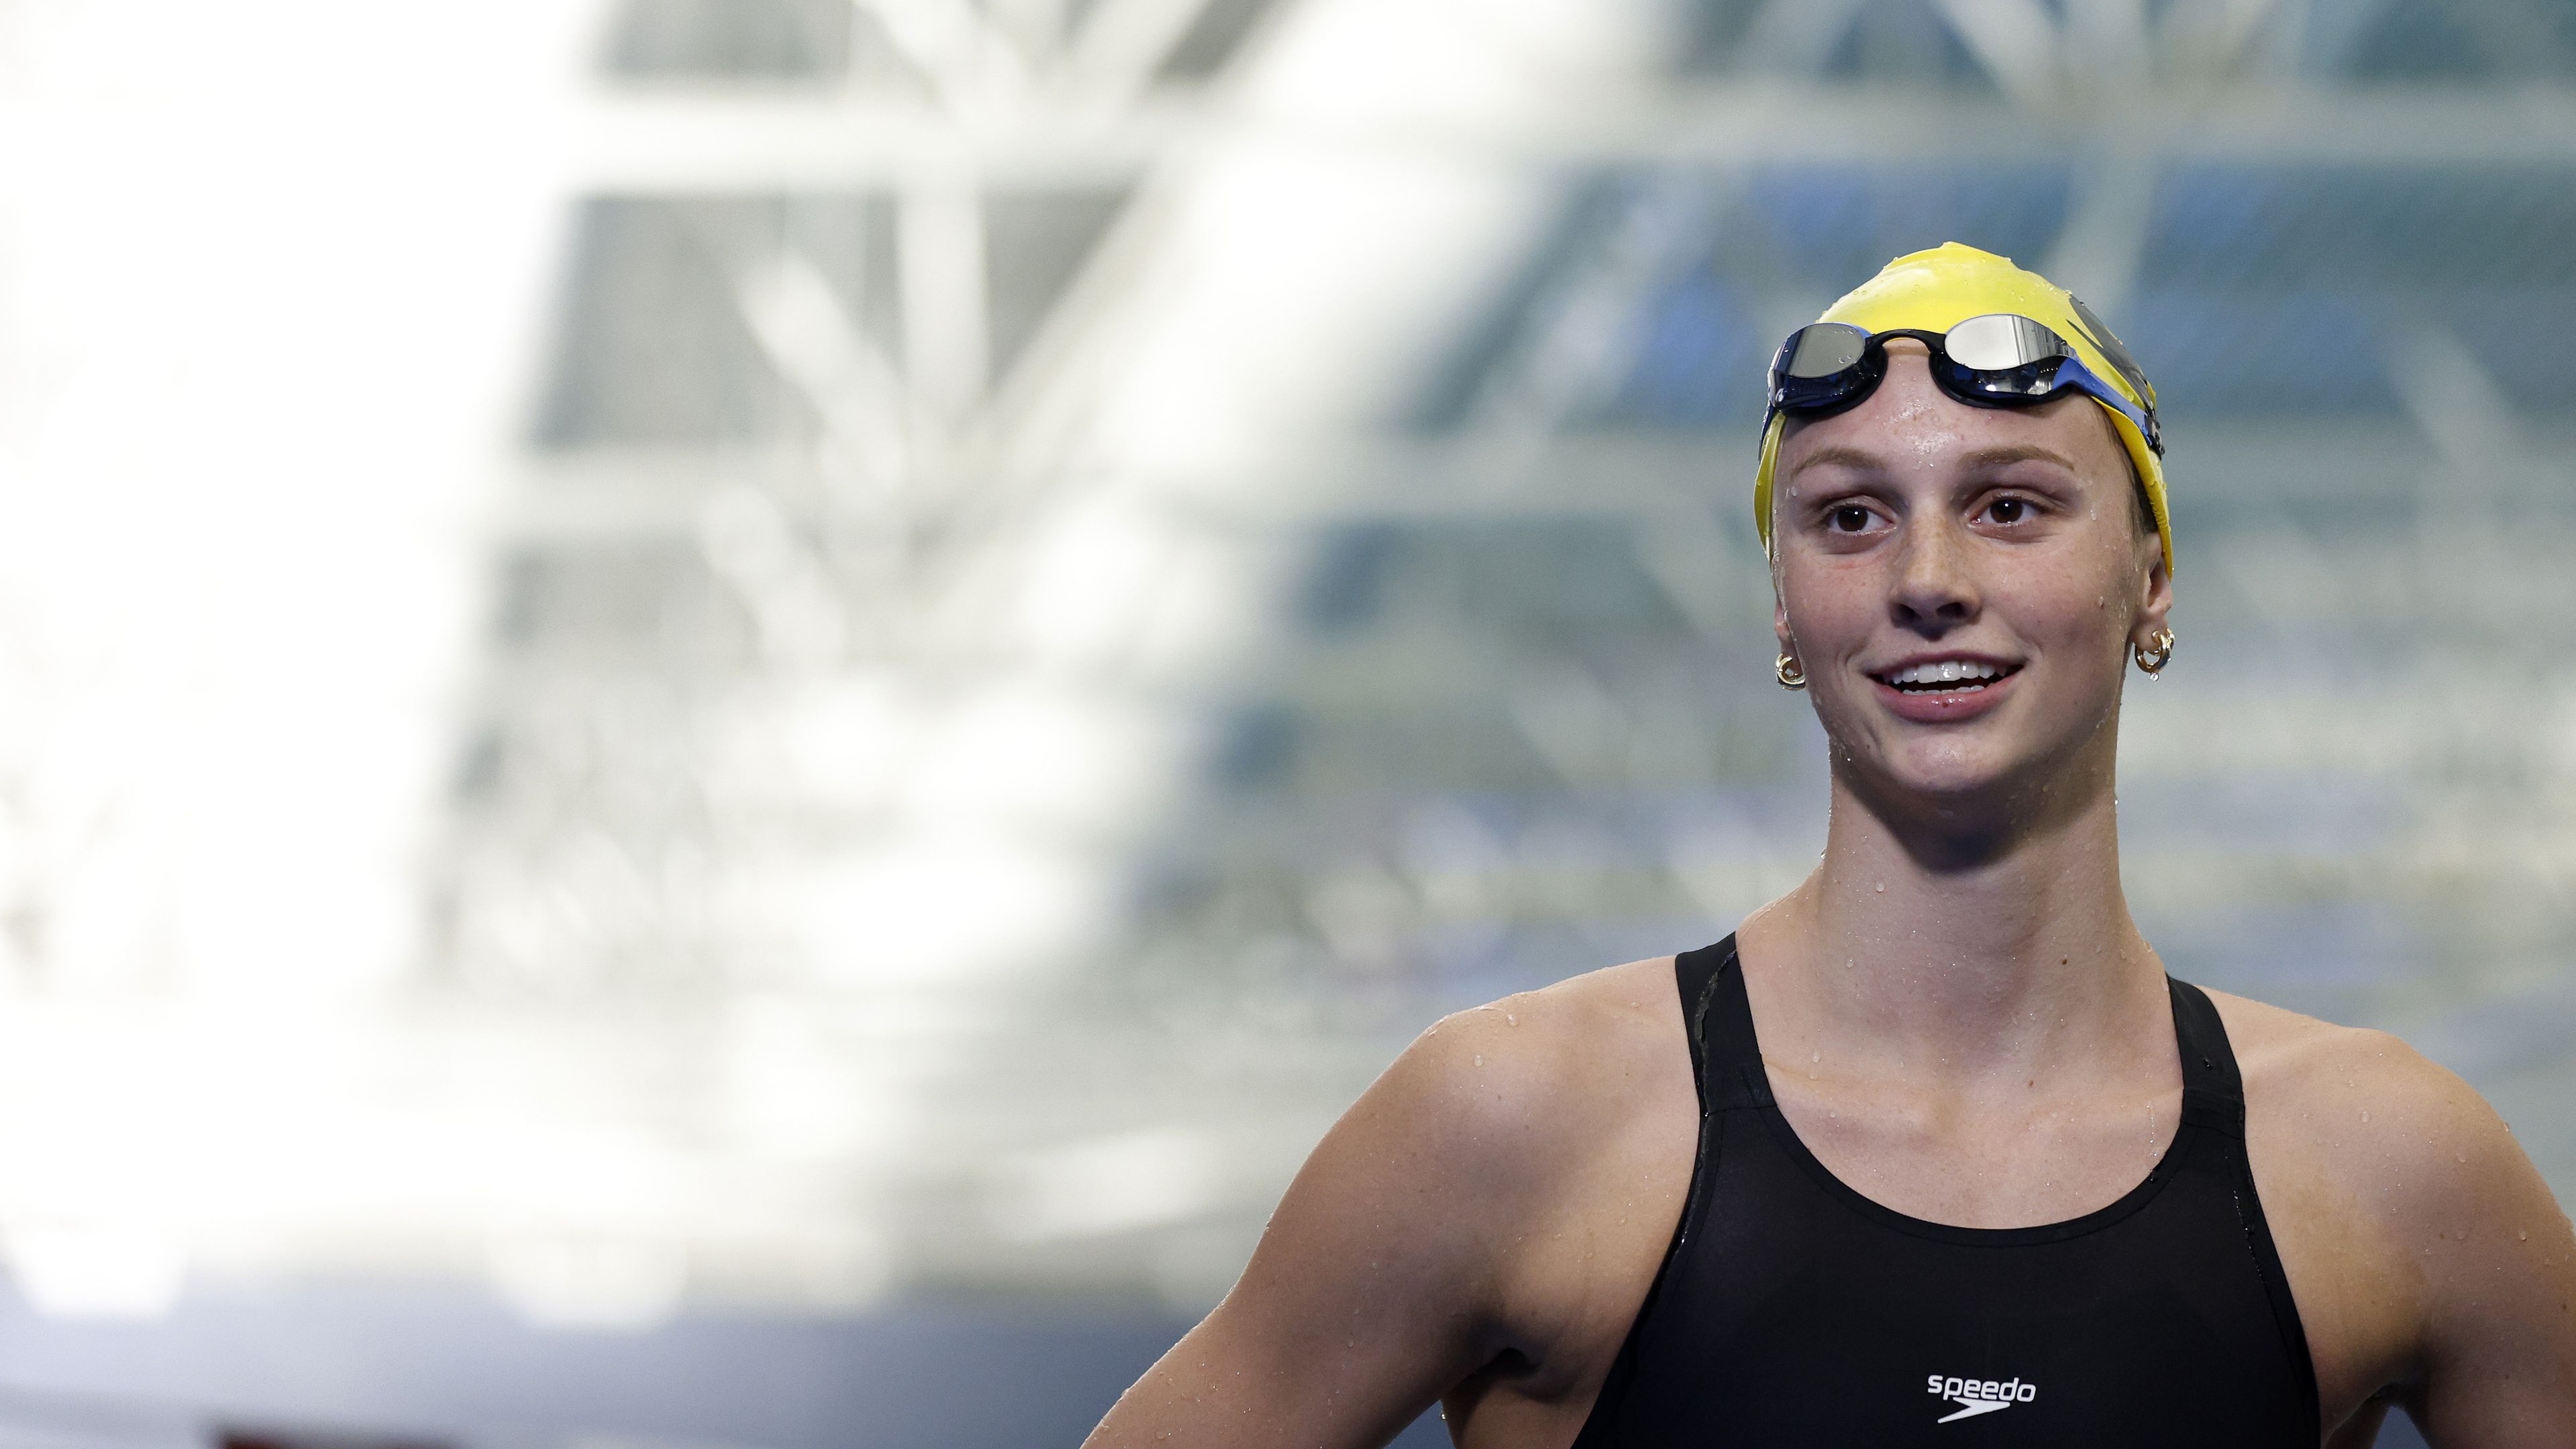 Videó: „Arról csak álmodhatok” – a Hosszú világcsúcsát megdöntő 16 éves úszó egy másik rekordról